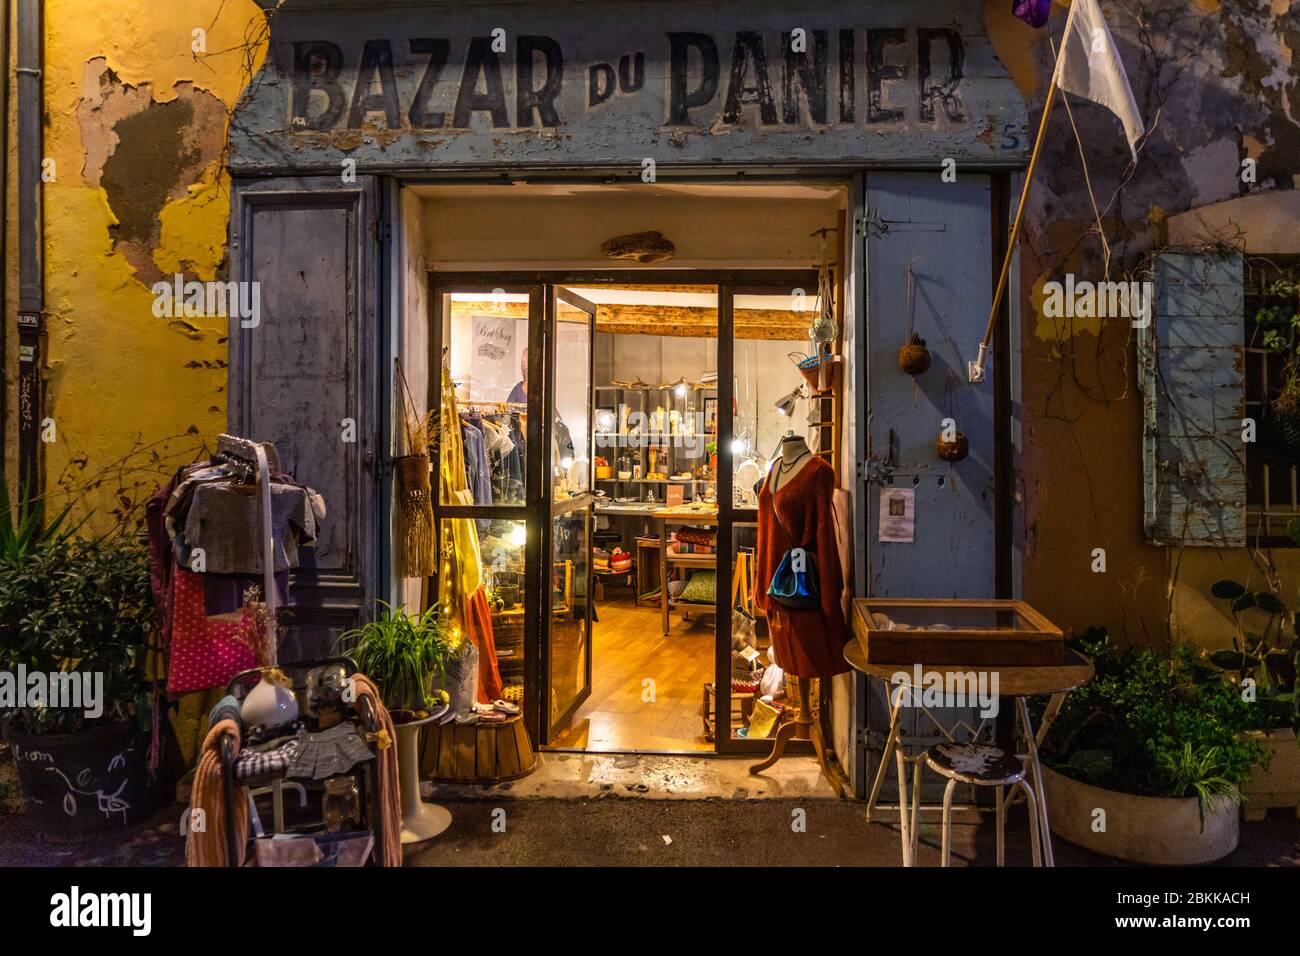 Vue nocturne de Bazar du Panier, l'un des magasins les plus typiques du quartier le Panier, le plus ancien quartier de Marseille Banque D'Images